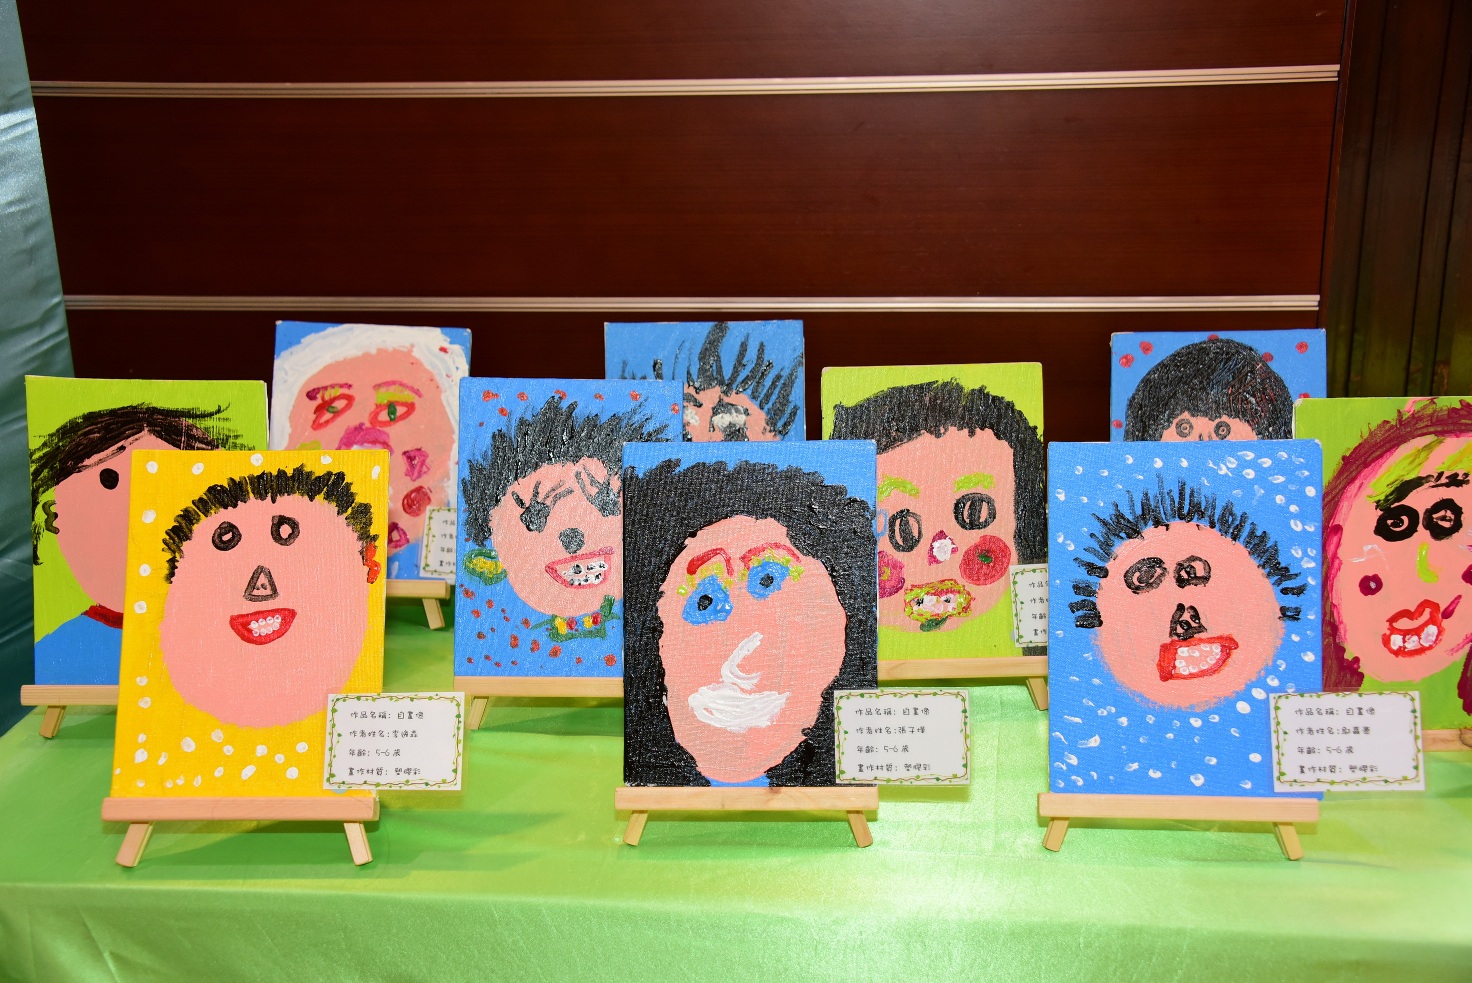 Exhibition of Kindergarten Students' Visual Arts Work